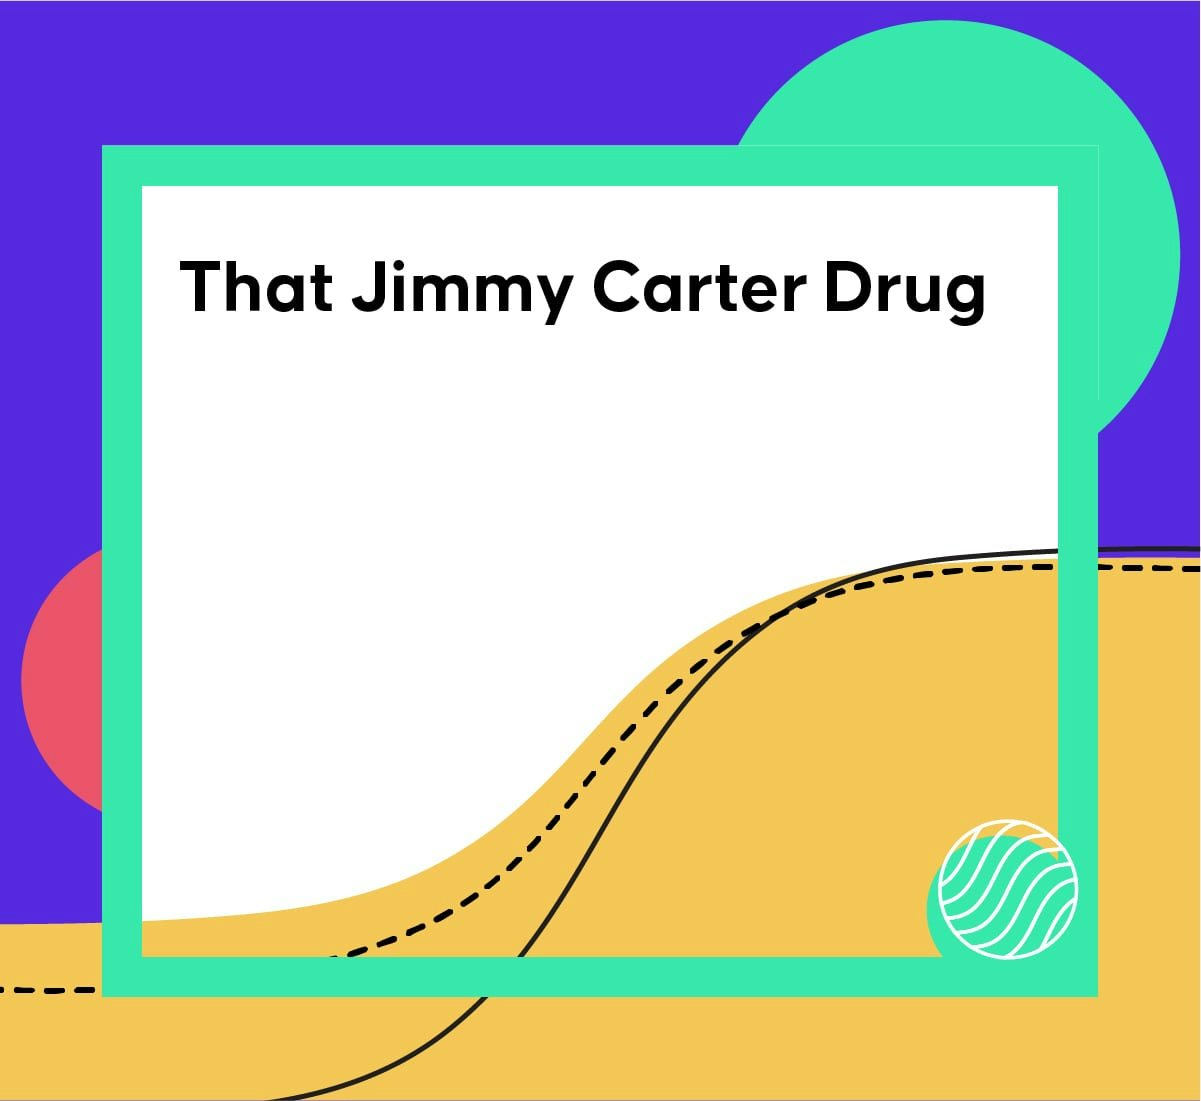 Cover image of Drug Hunter article "That Jimmy Carter Drug"|